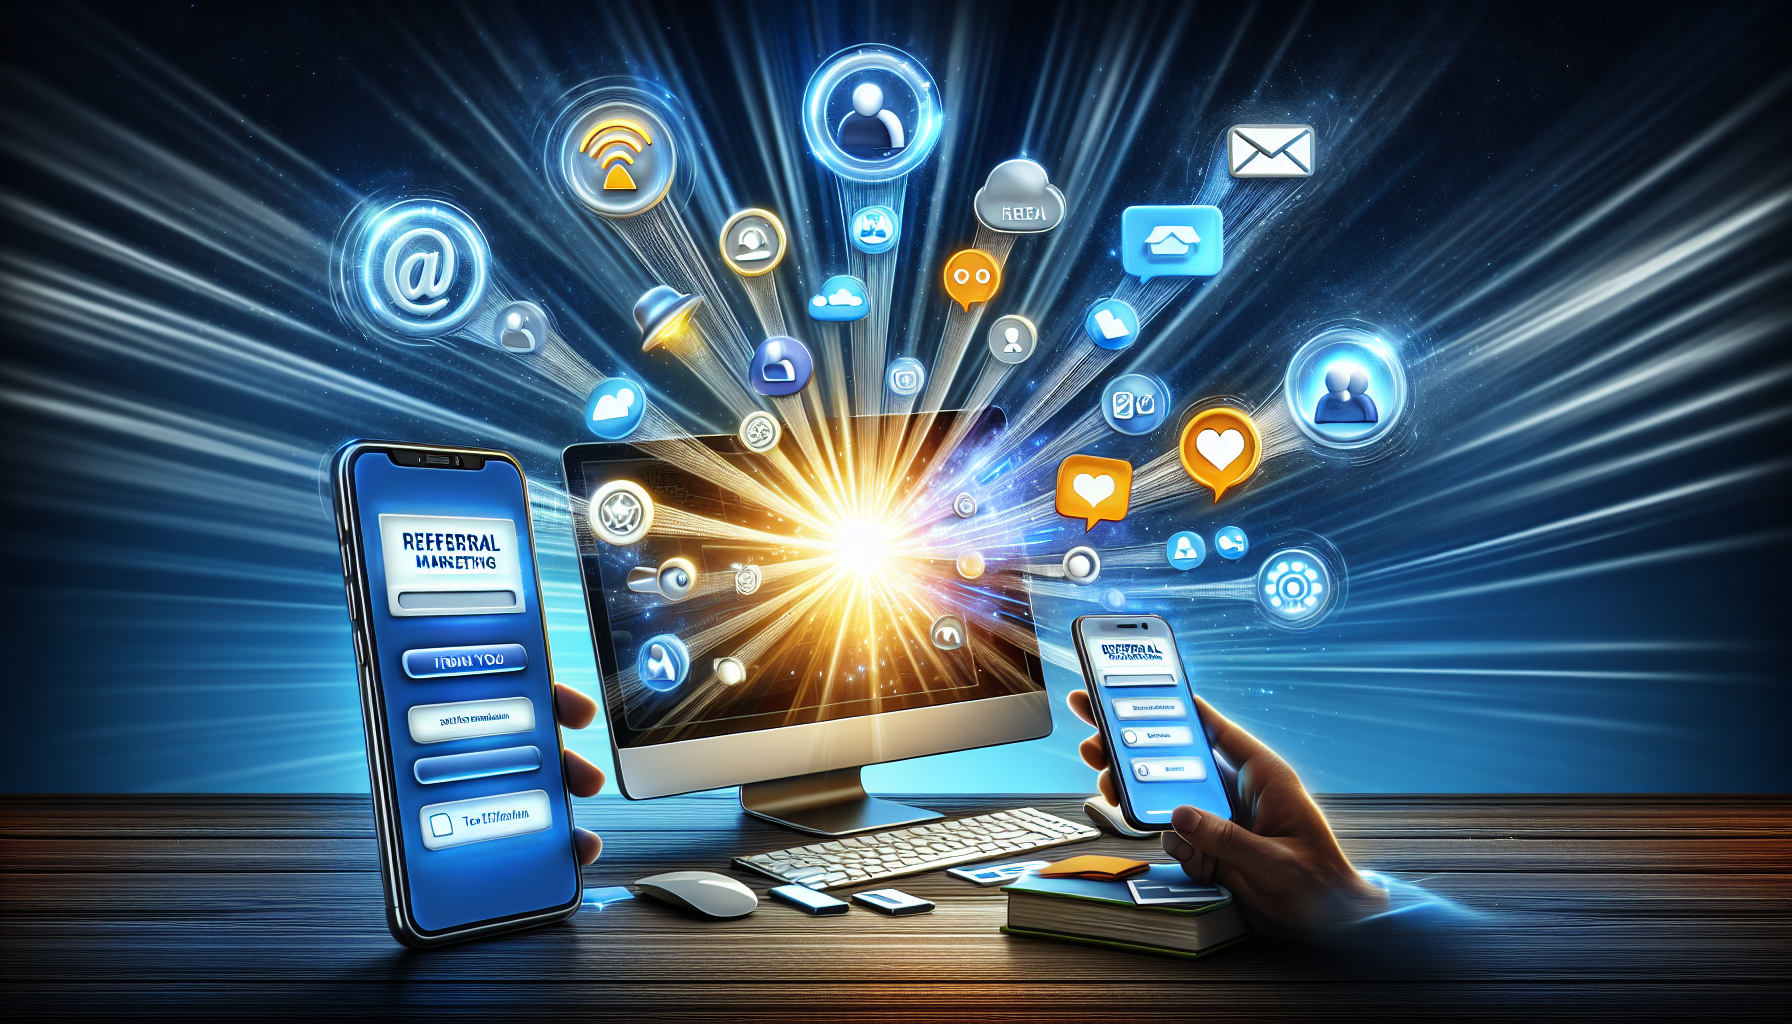 Ilustración de herramientas y plataformas para el marketing de recomendación, incluidas soluciones de software, integración de redes sociales y marketing por correo electrónico.